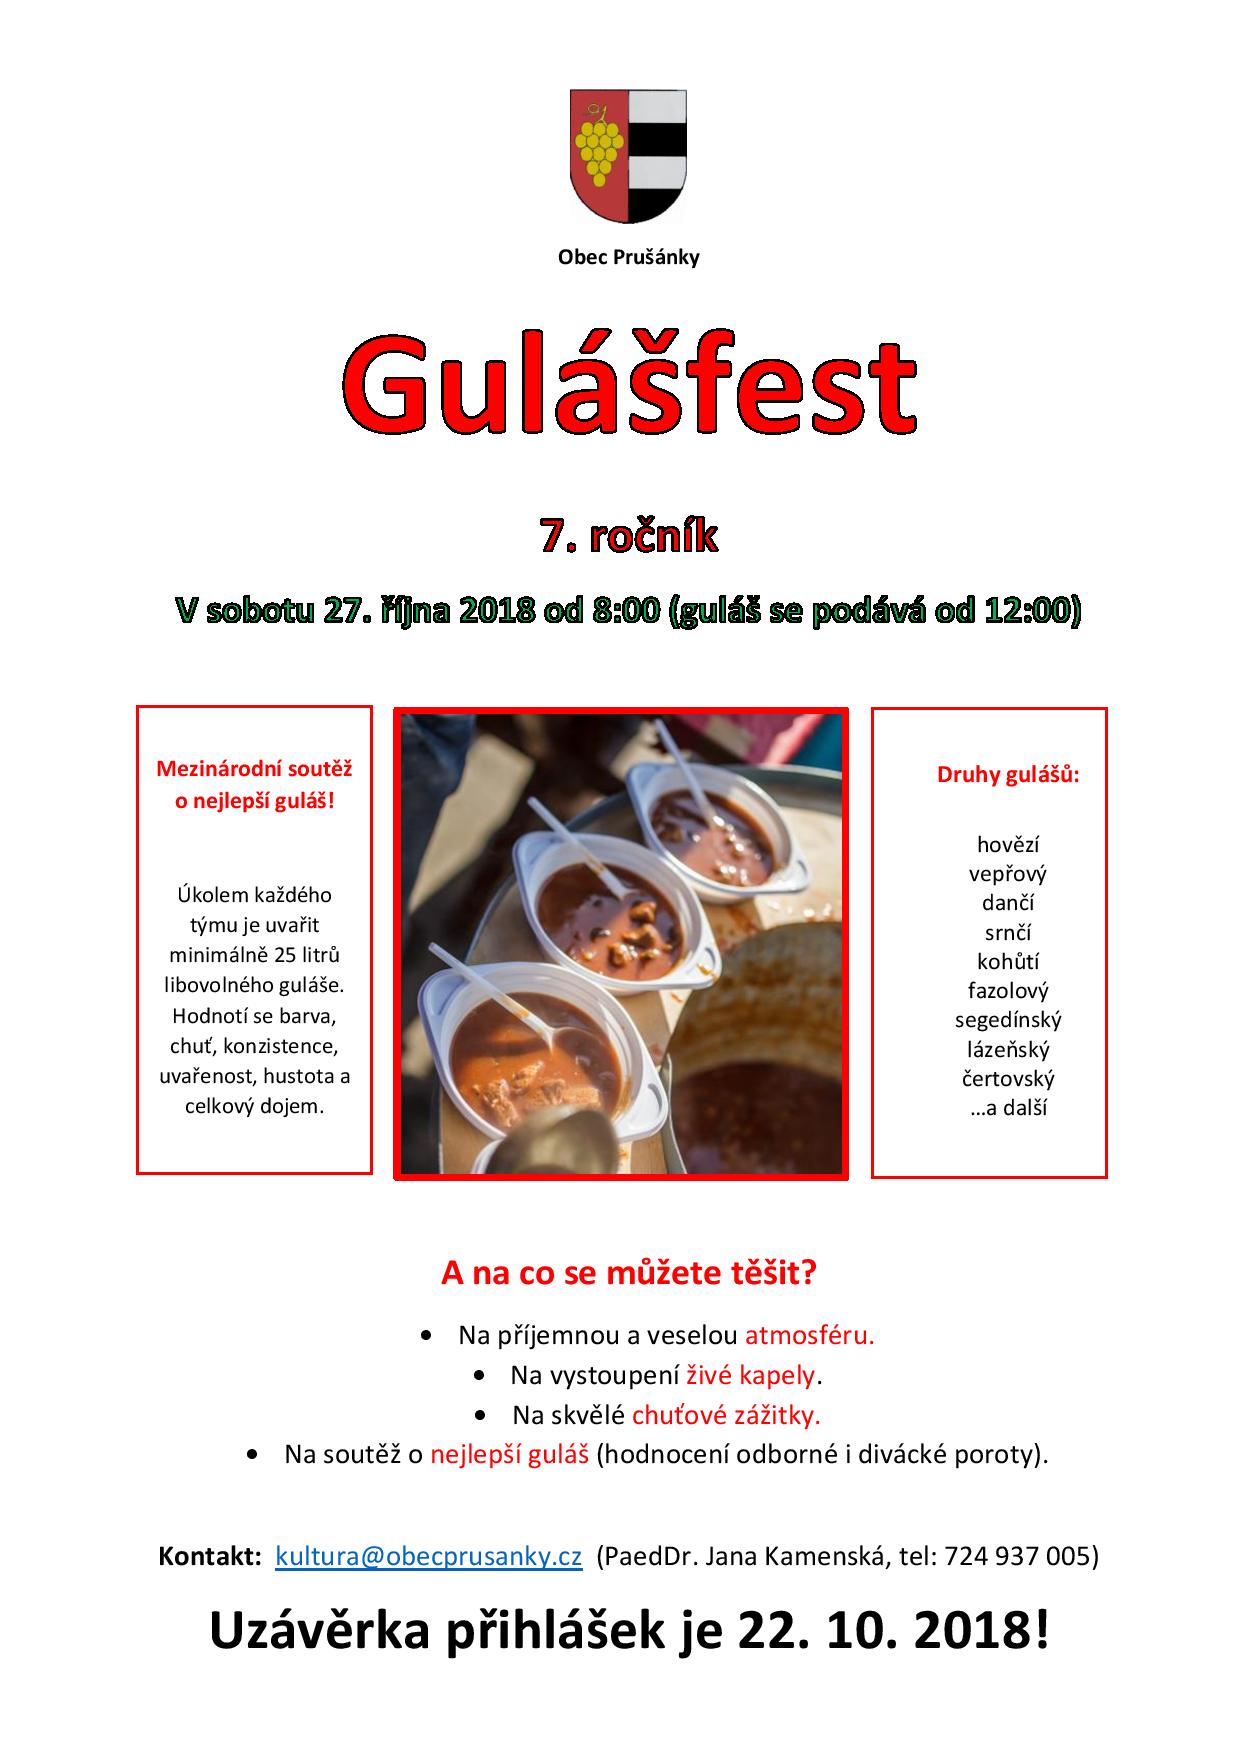 Prusanky Gulasfest